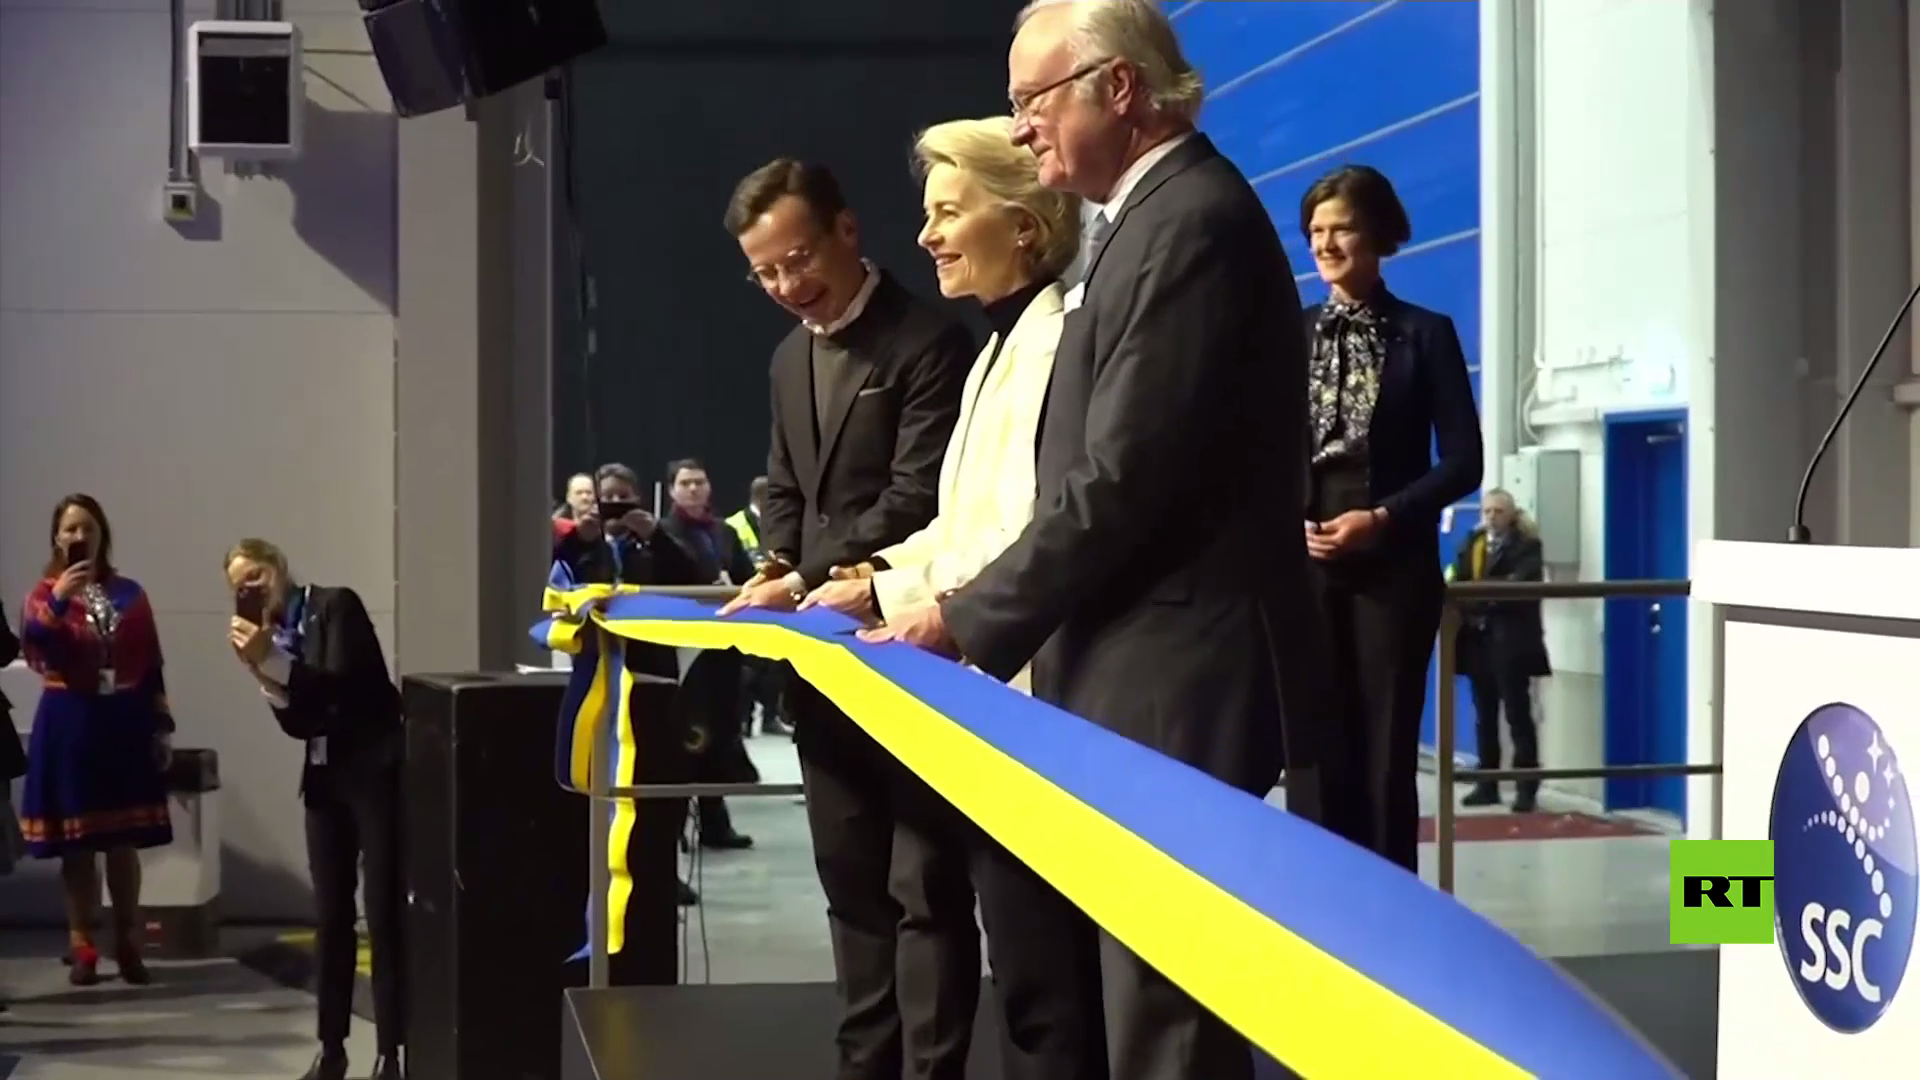 بالفيديو.. الاتحاد الأوروبي يدشن أول منصة من نوعها لإطلاق أقمار صناعية في السويد